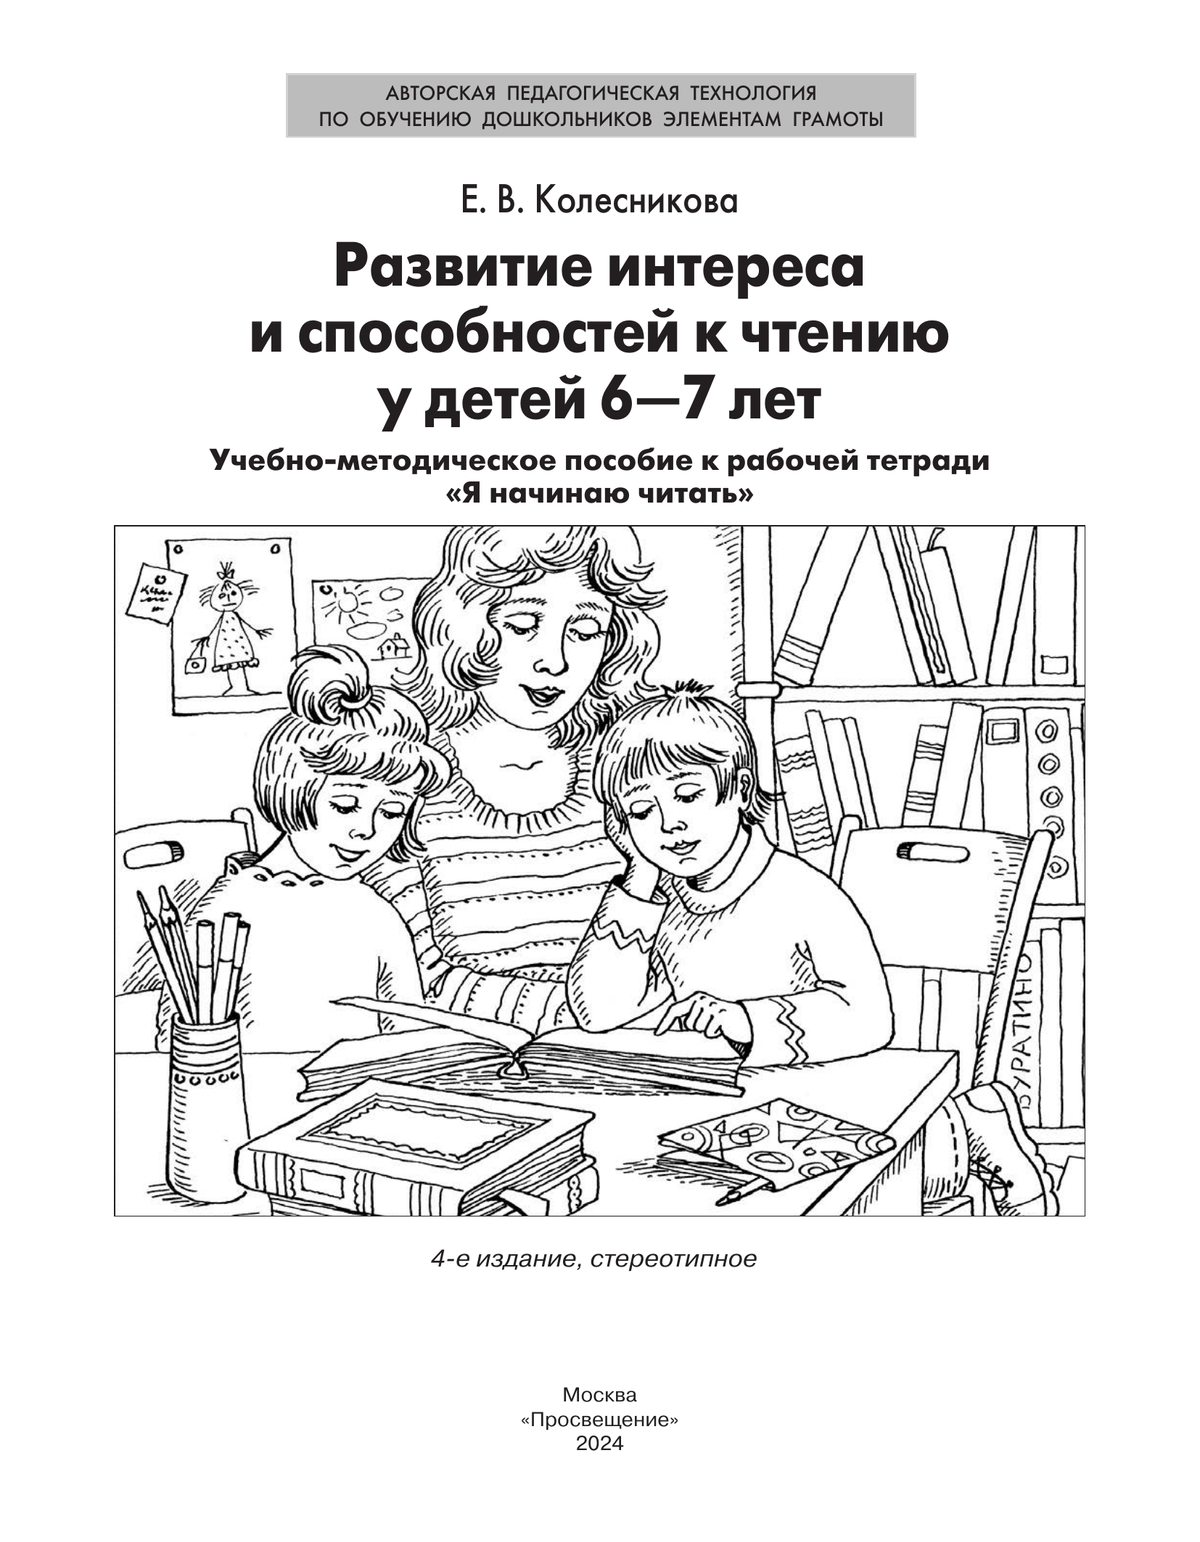 Развитие интереса и способностей к чтению у детей 6-7 лет. Учебно-методическое пособие к рабочей тетради "Я начинаю читать"  5